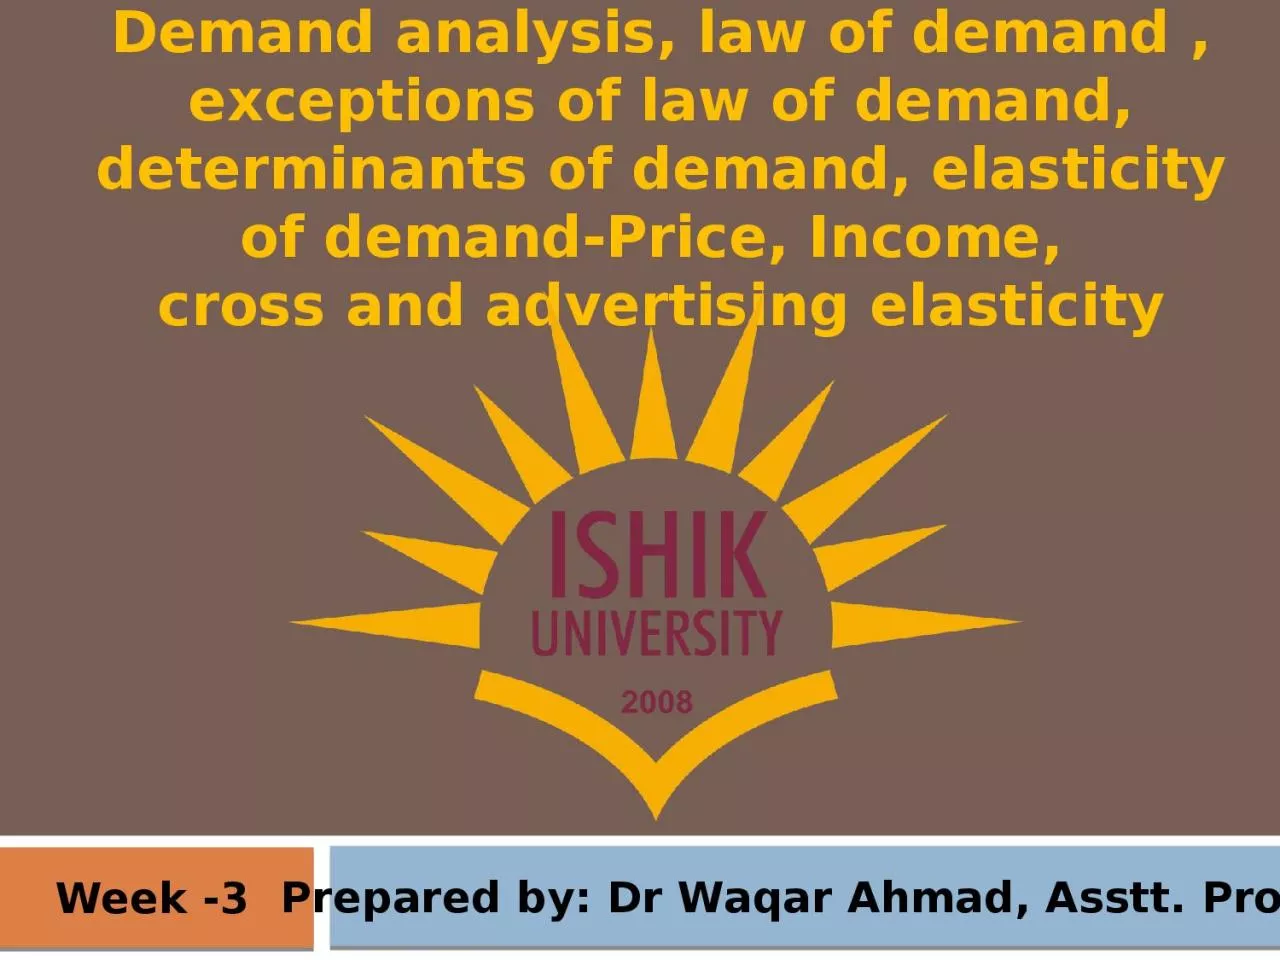 Week -3 Prepared by: Dr Waqar Ahmad,